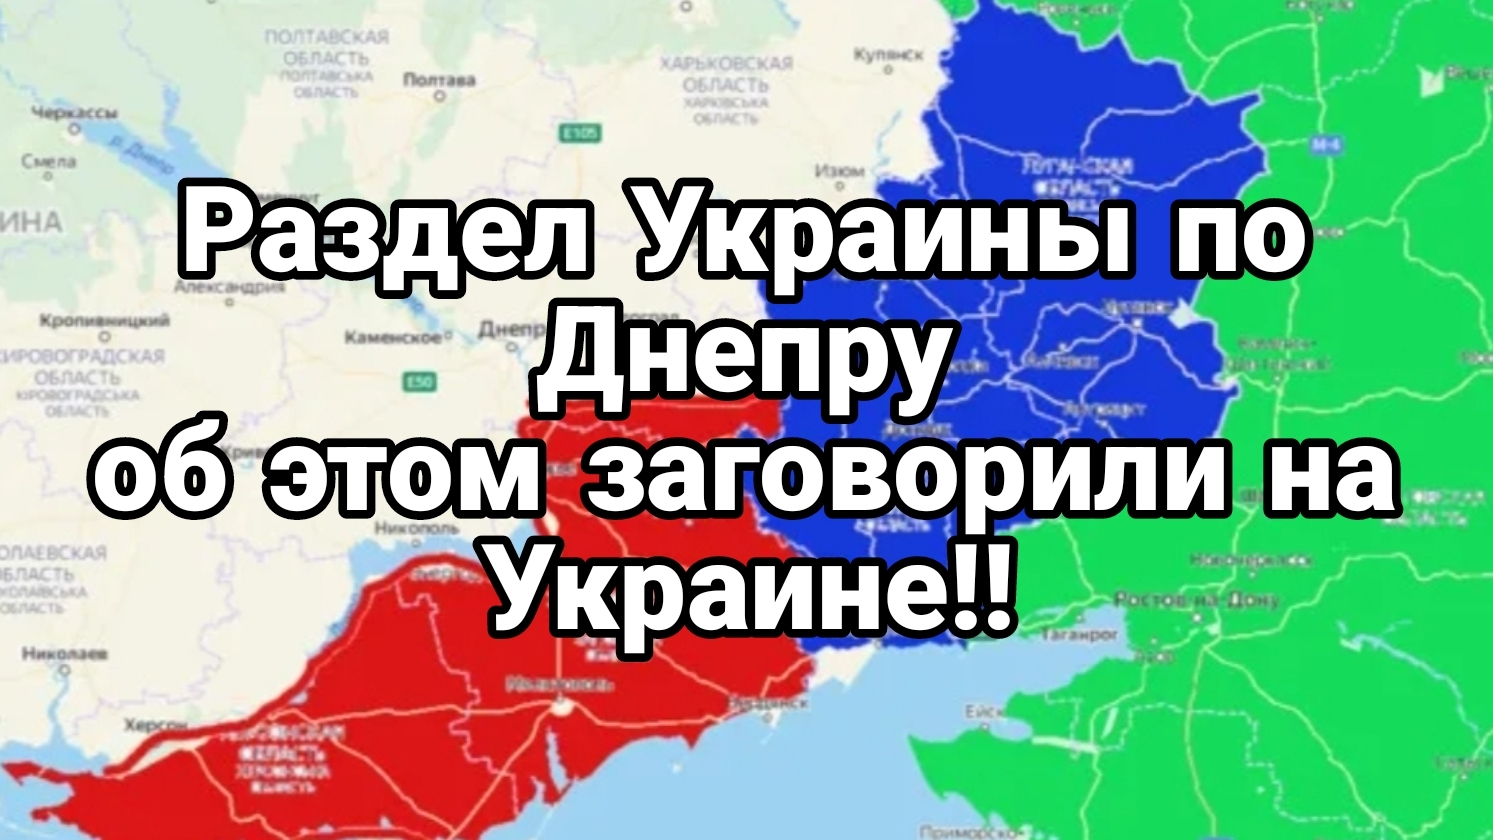 Раздел Украины по Днепру Об этом заговорили на Украине